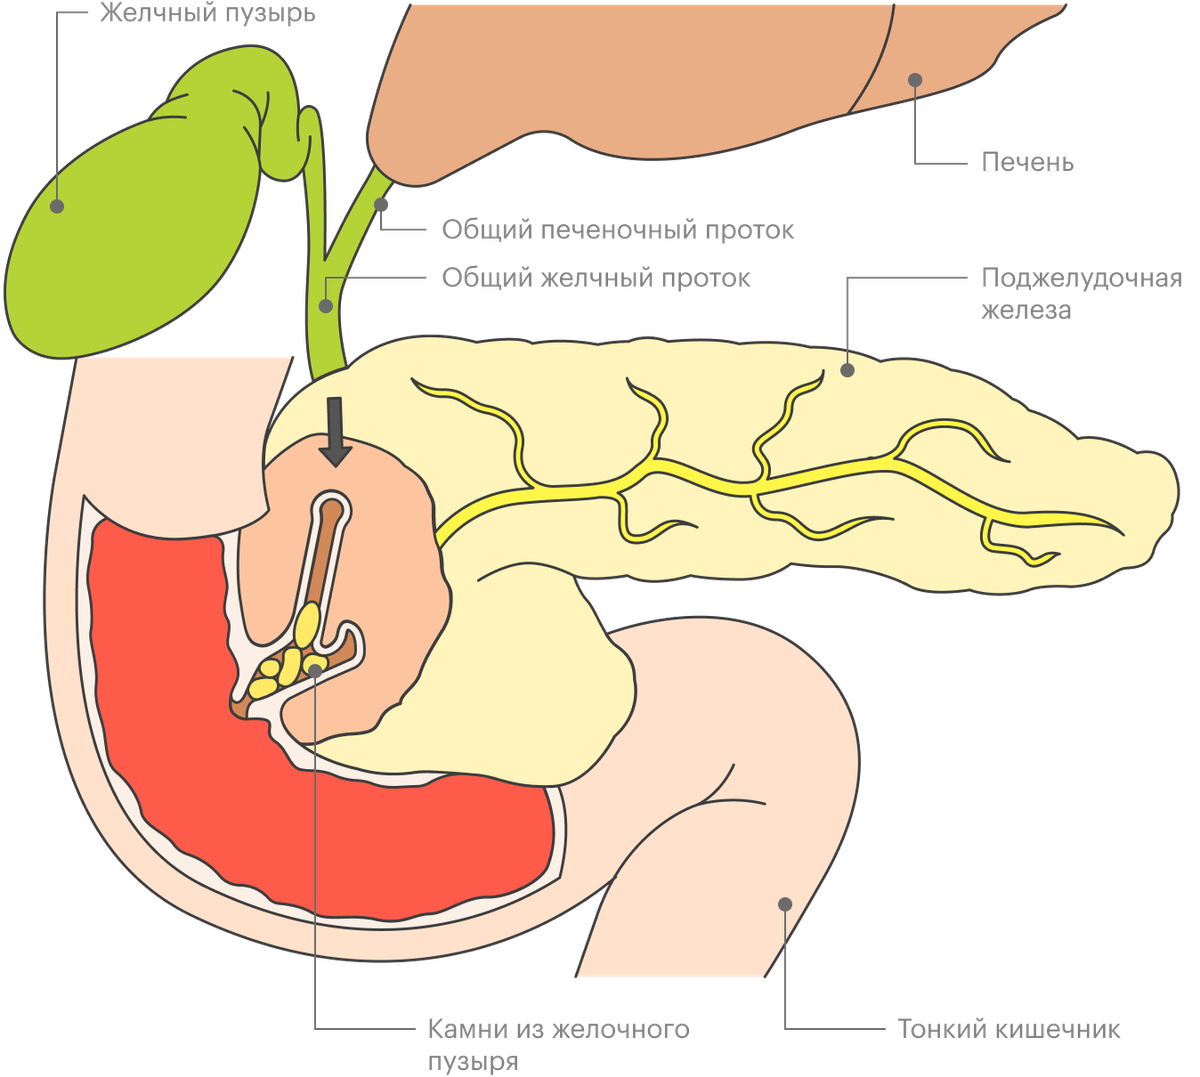 Санториниев проток поджелудочной железы. Желчные протоки и протоки поджелудочной железы. Вирсунгов проток поджелудочной железы.